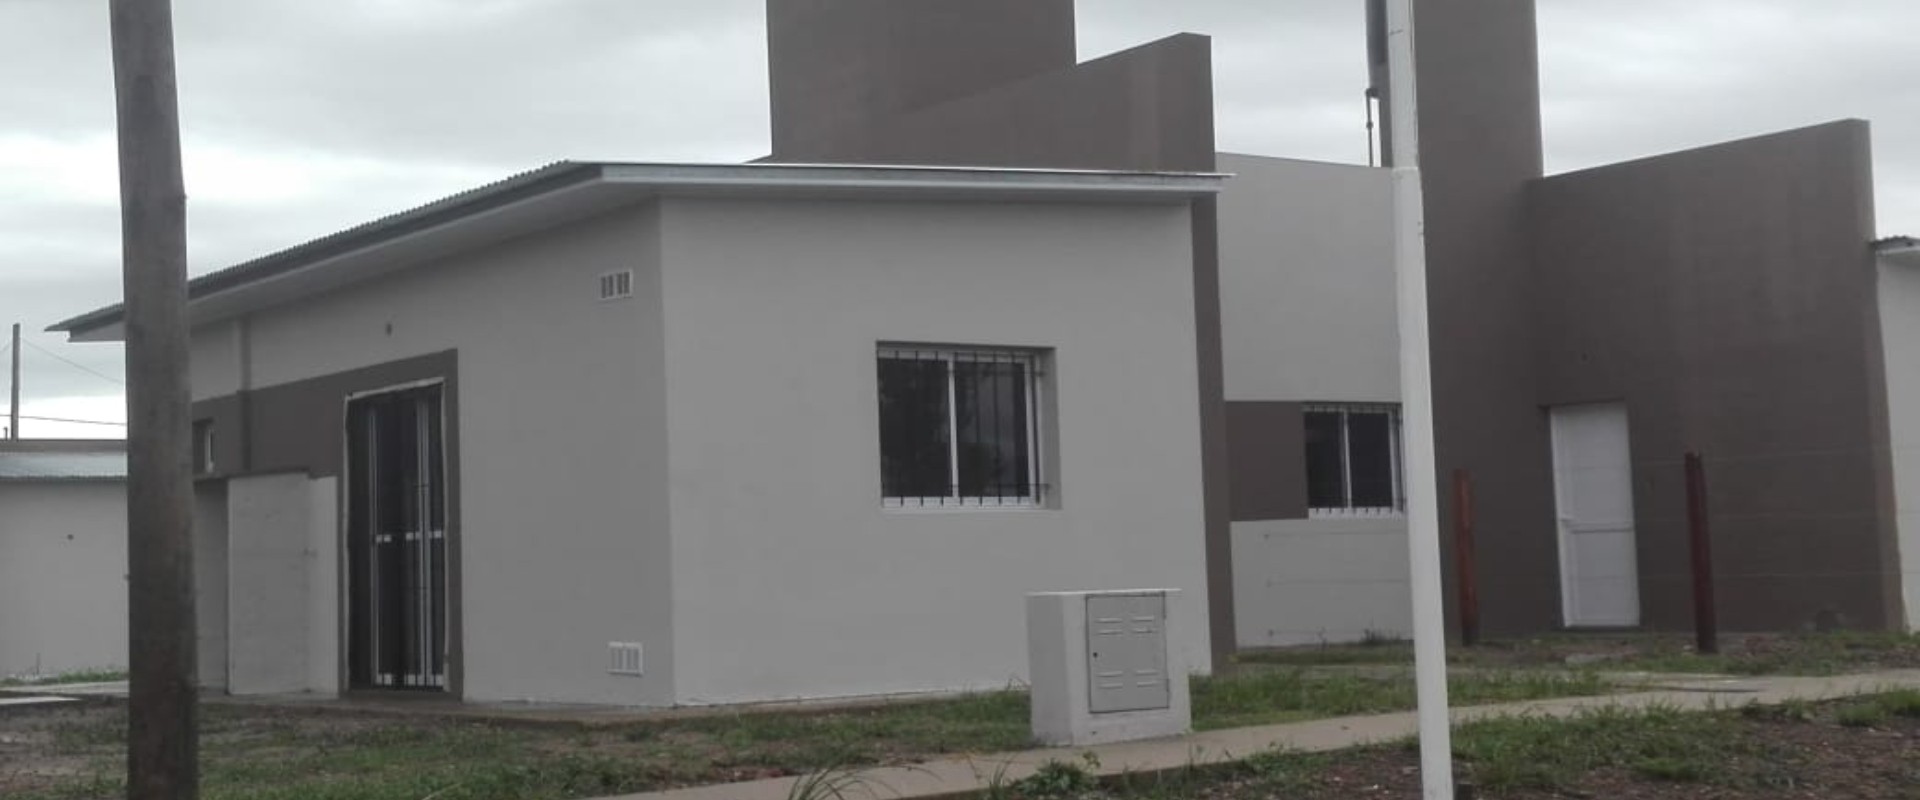 Se ejecutarán 10 nuevas viviendas en Colonia Los Ceibos  financiadas por la provincia